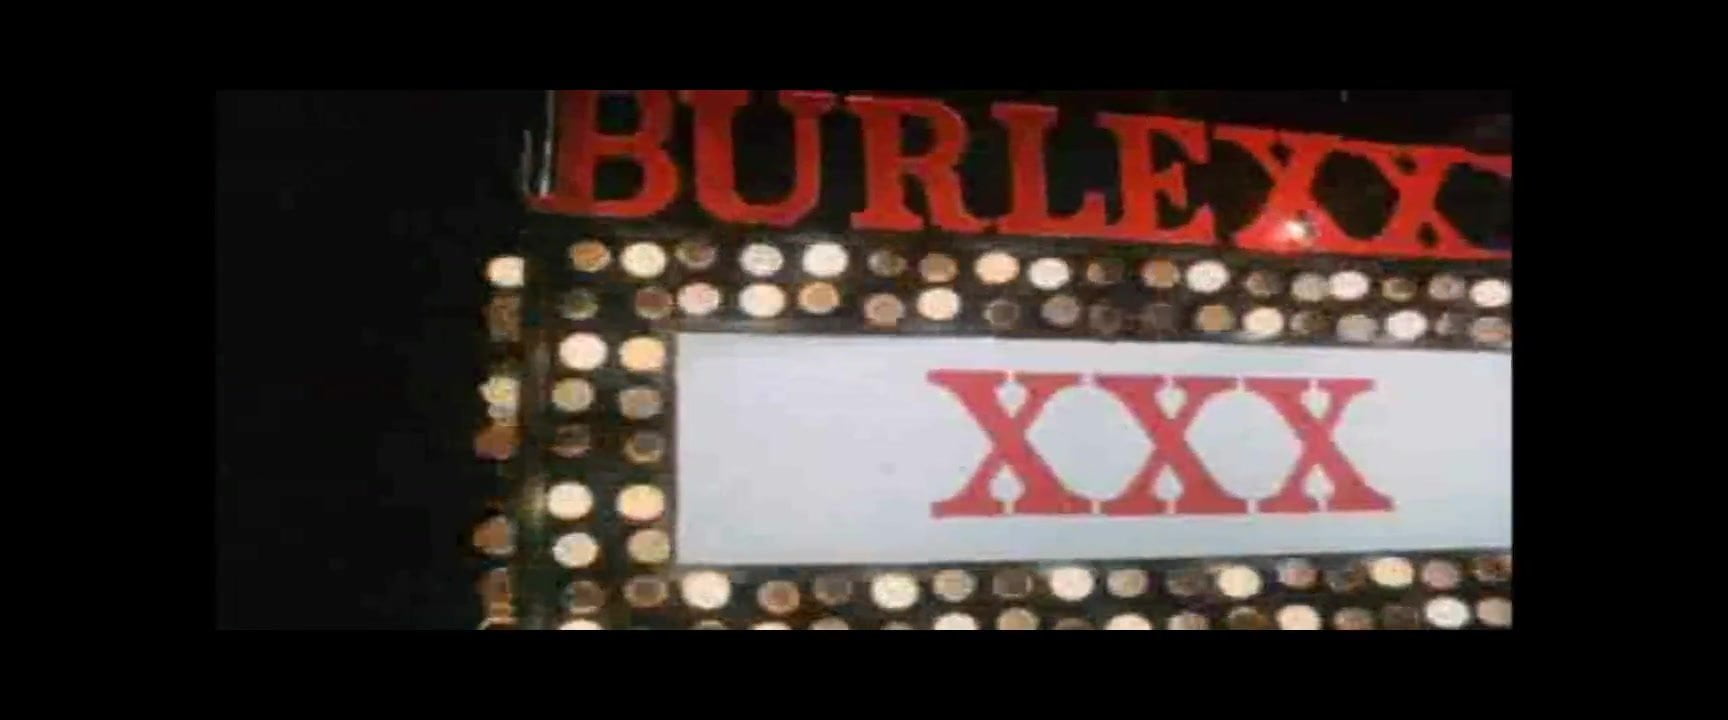 Trailer - Burlexxx (1984)